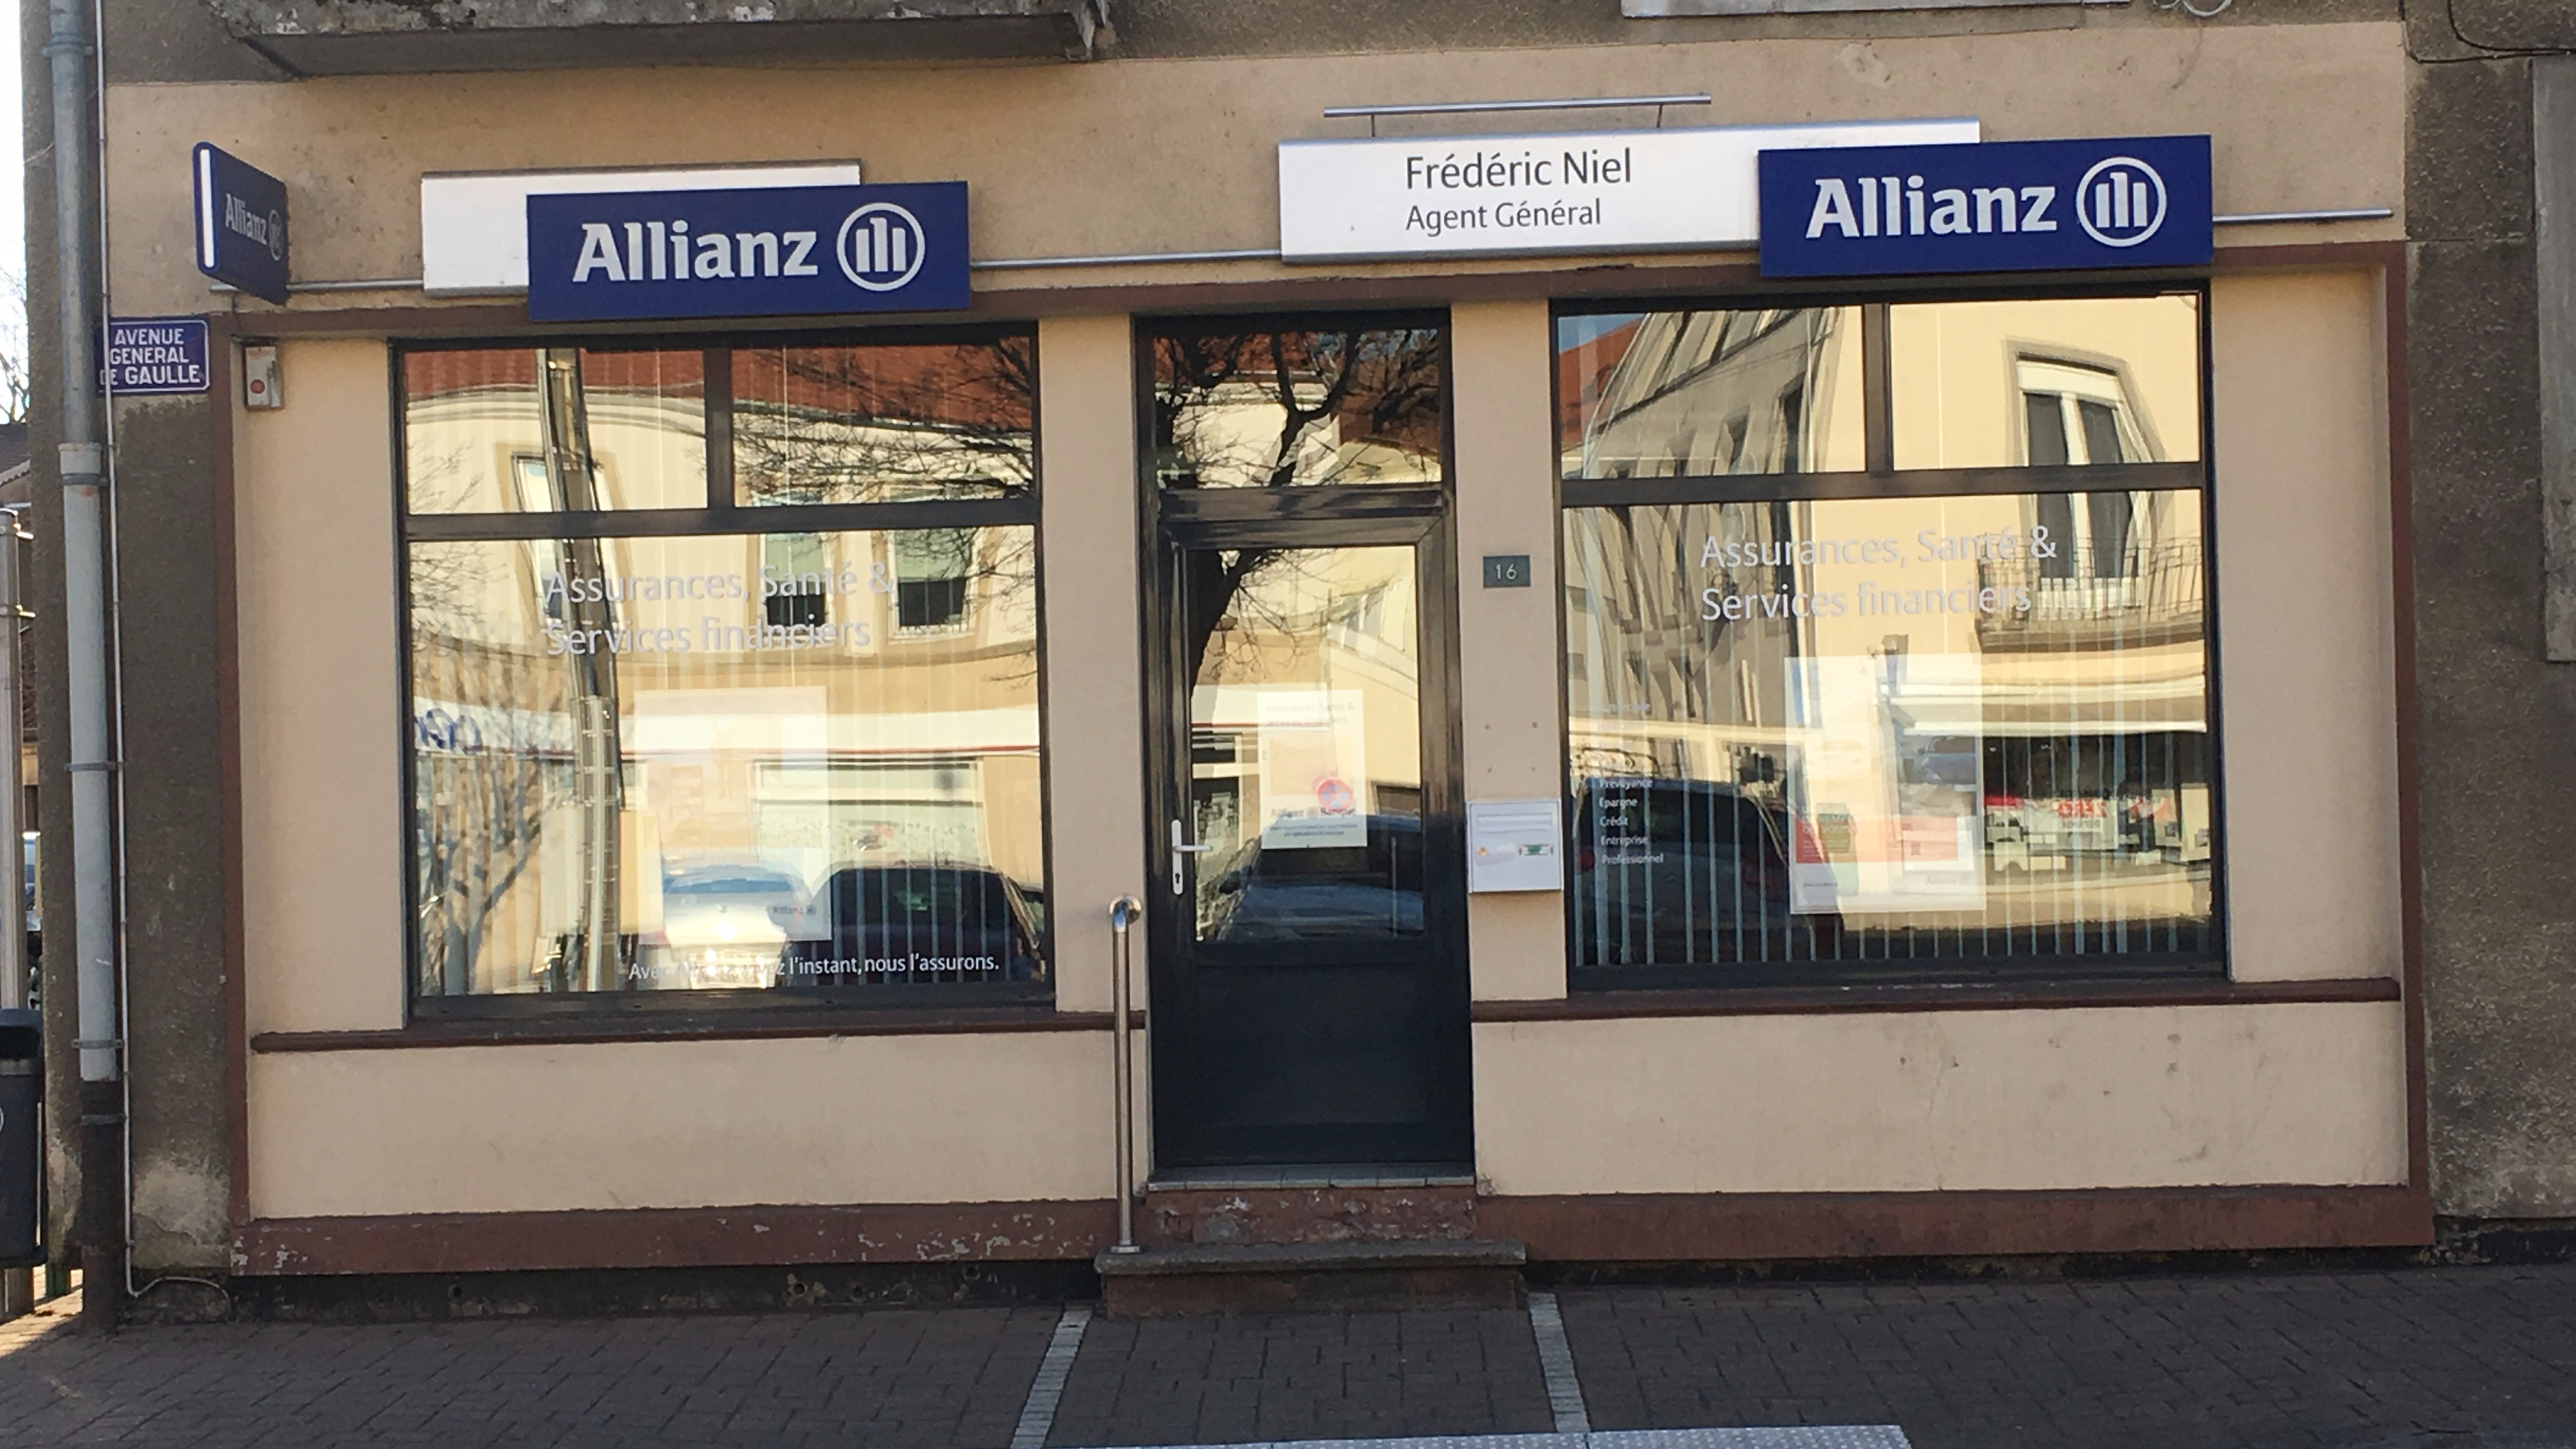 Allianz DIEUZE - Frederic NIEL